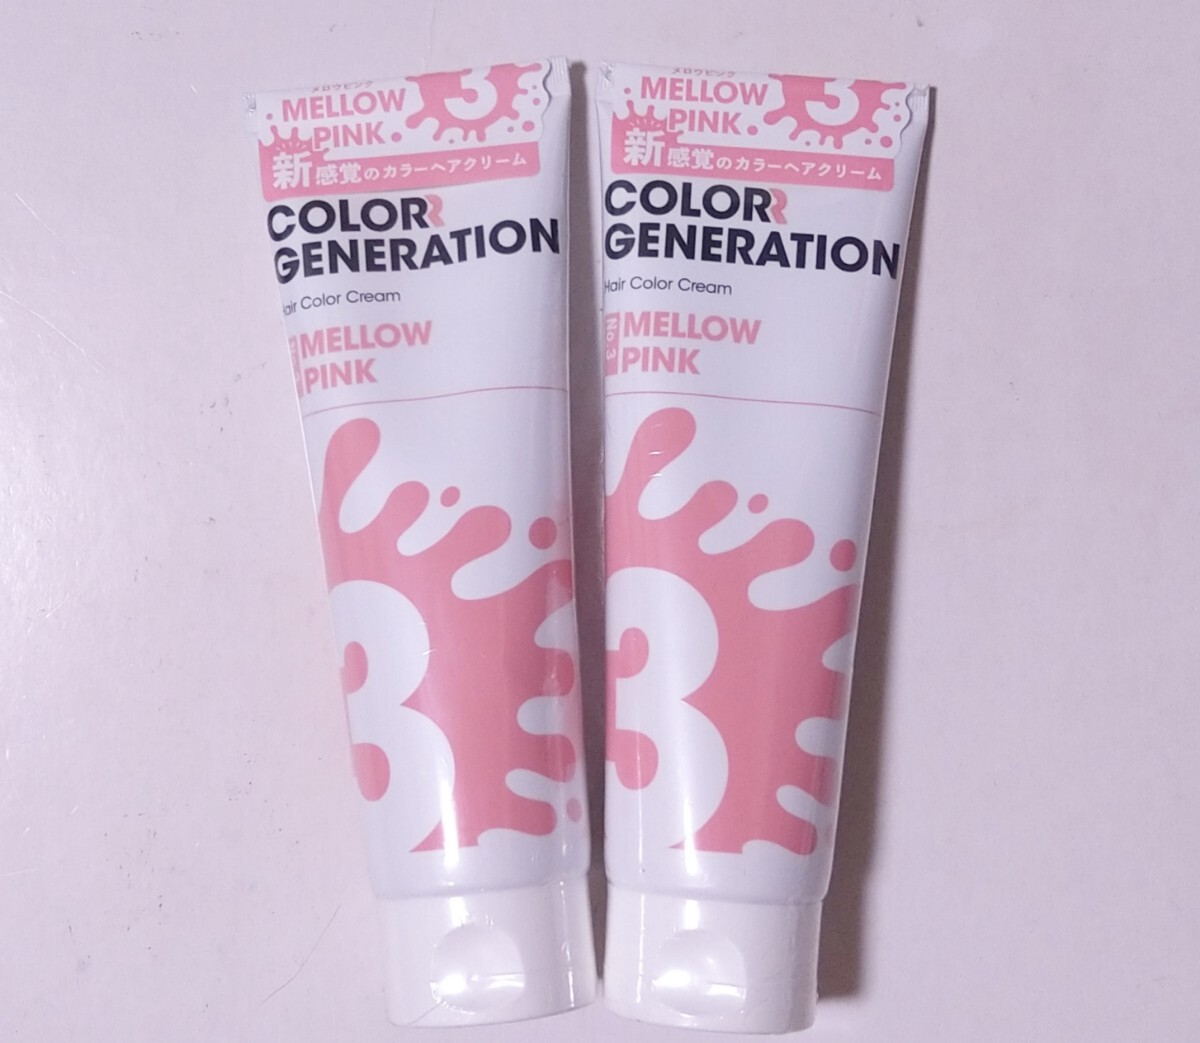 COLORR GENERATION цвет generation цвет крем краситель для волос уход No.3 сочный розовый 150g 2 шт. комплект 